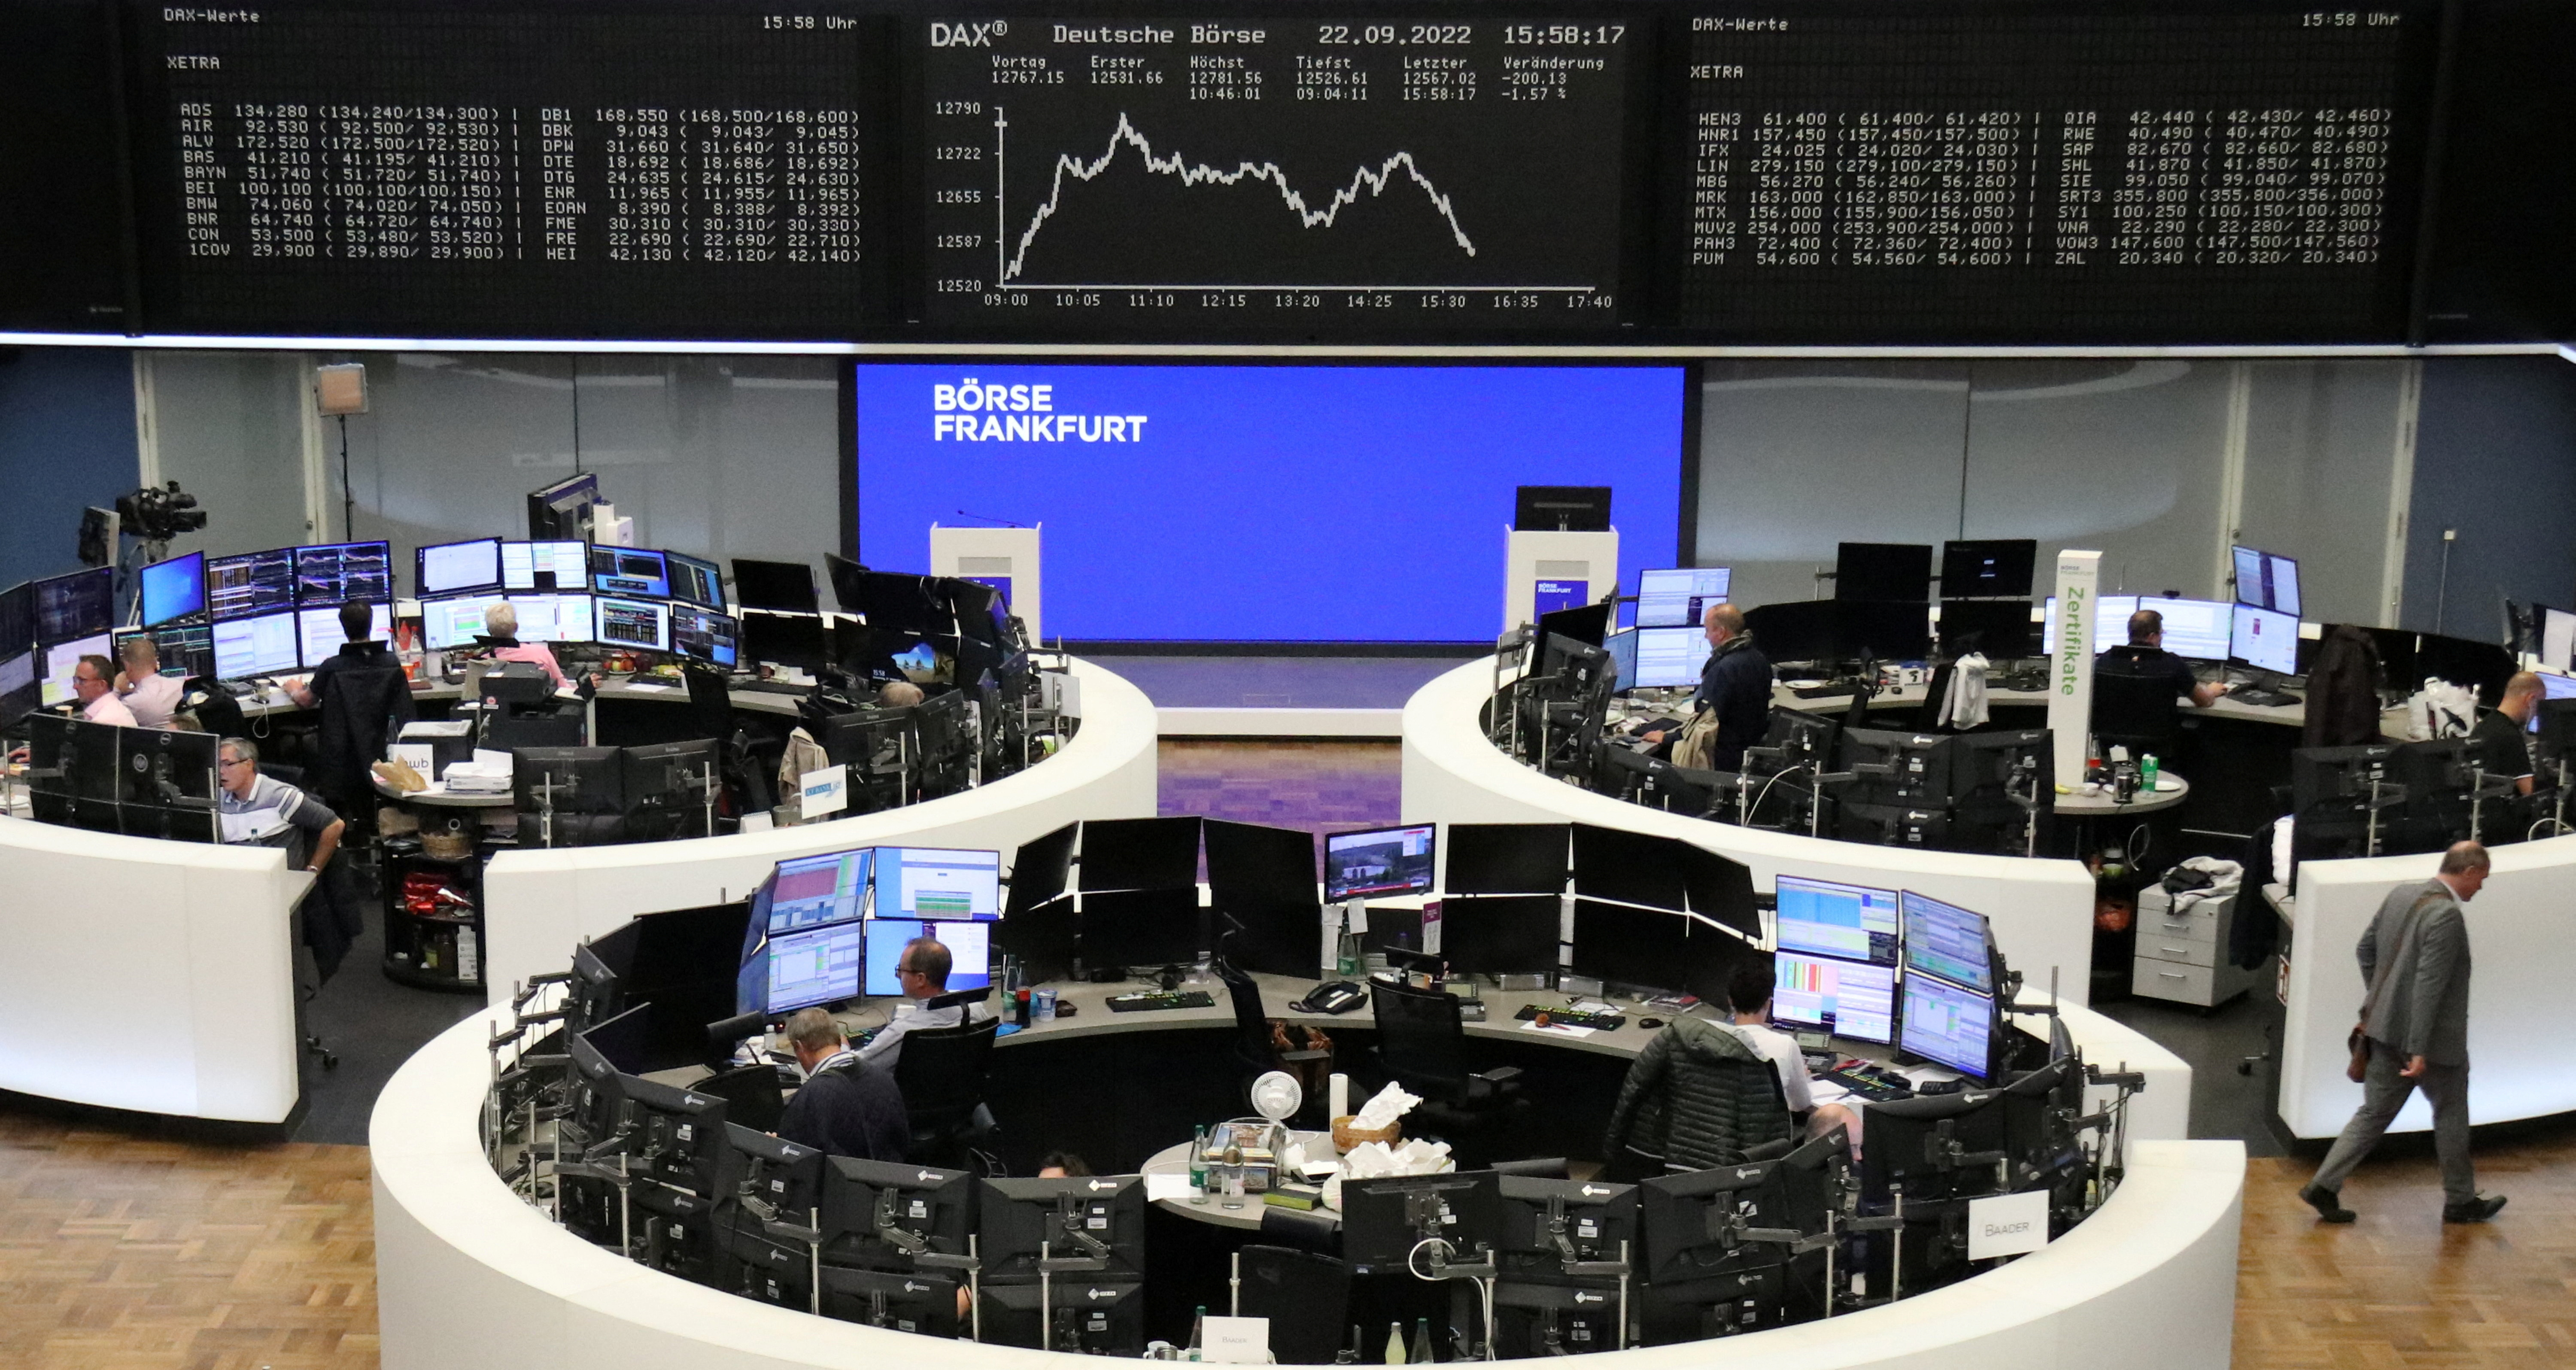 The Frankfurt Stock Exchange (REUTERS)